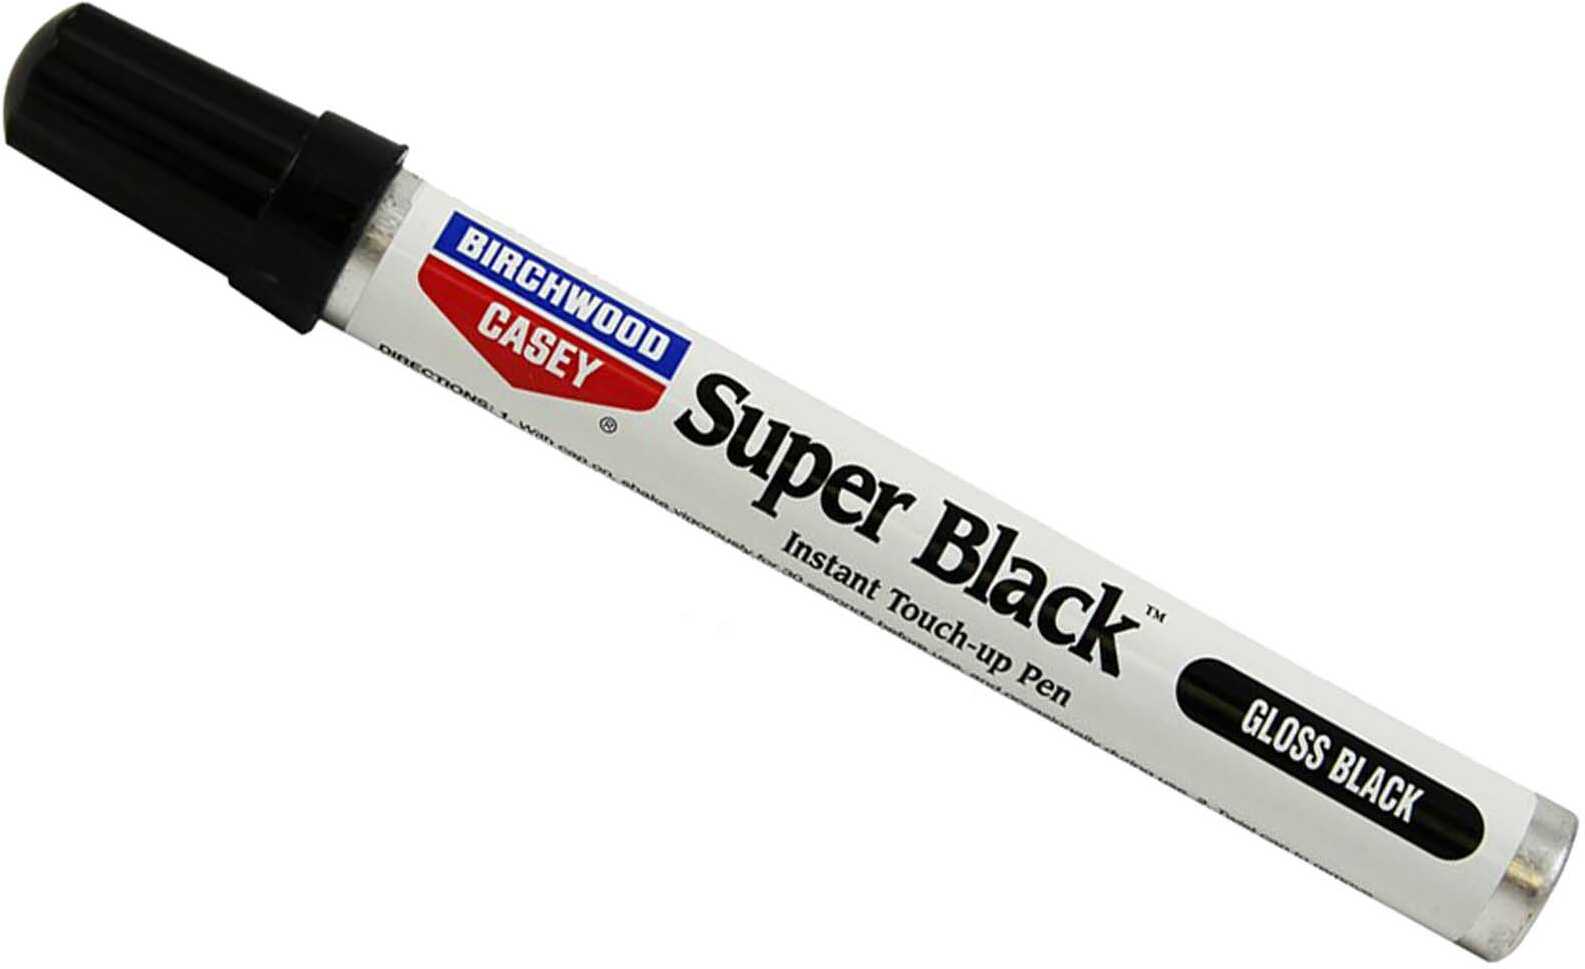 Birchwood Casey BPP Super Black Gloss Pen Touch Up Blister Card 15111